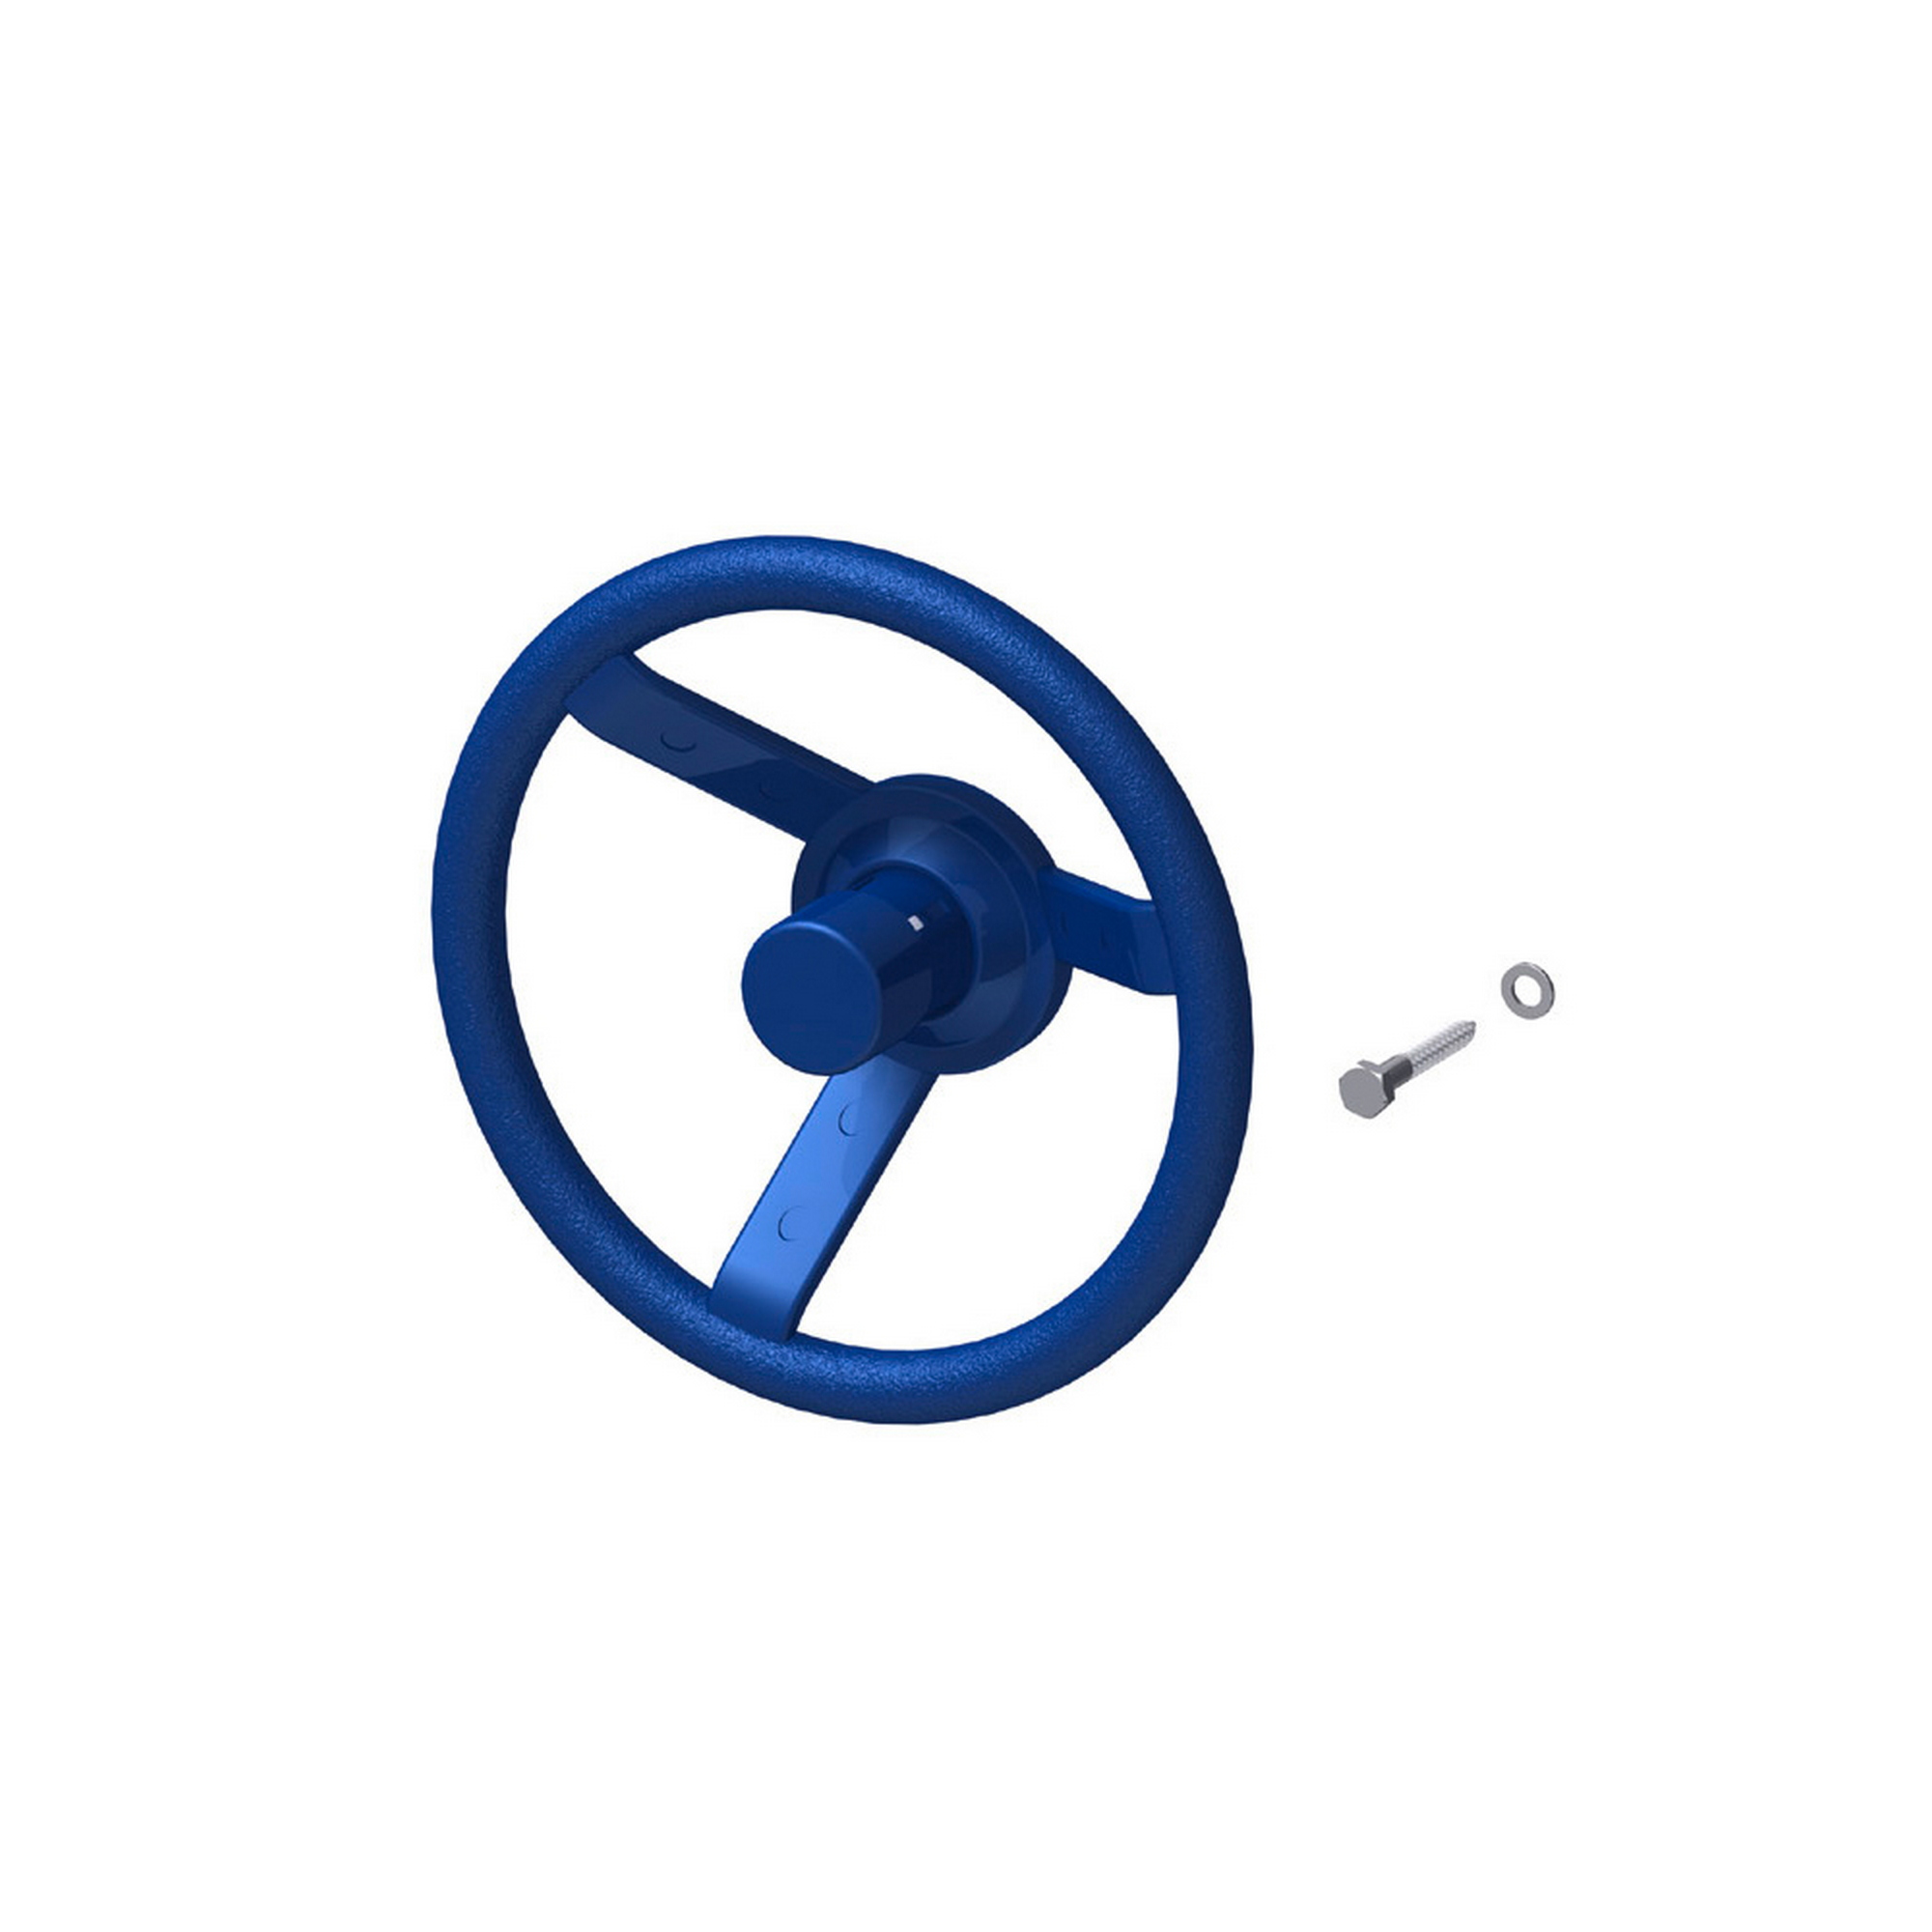 Lenkrad 'Winnetoo' blau, mit Hupe + product picture